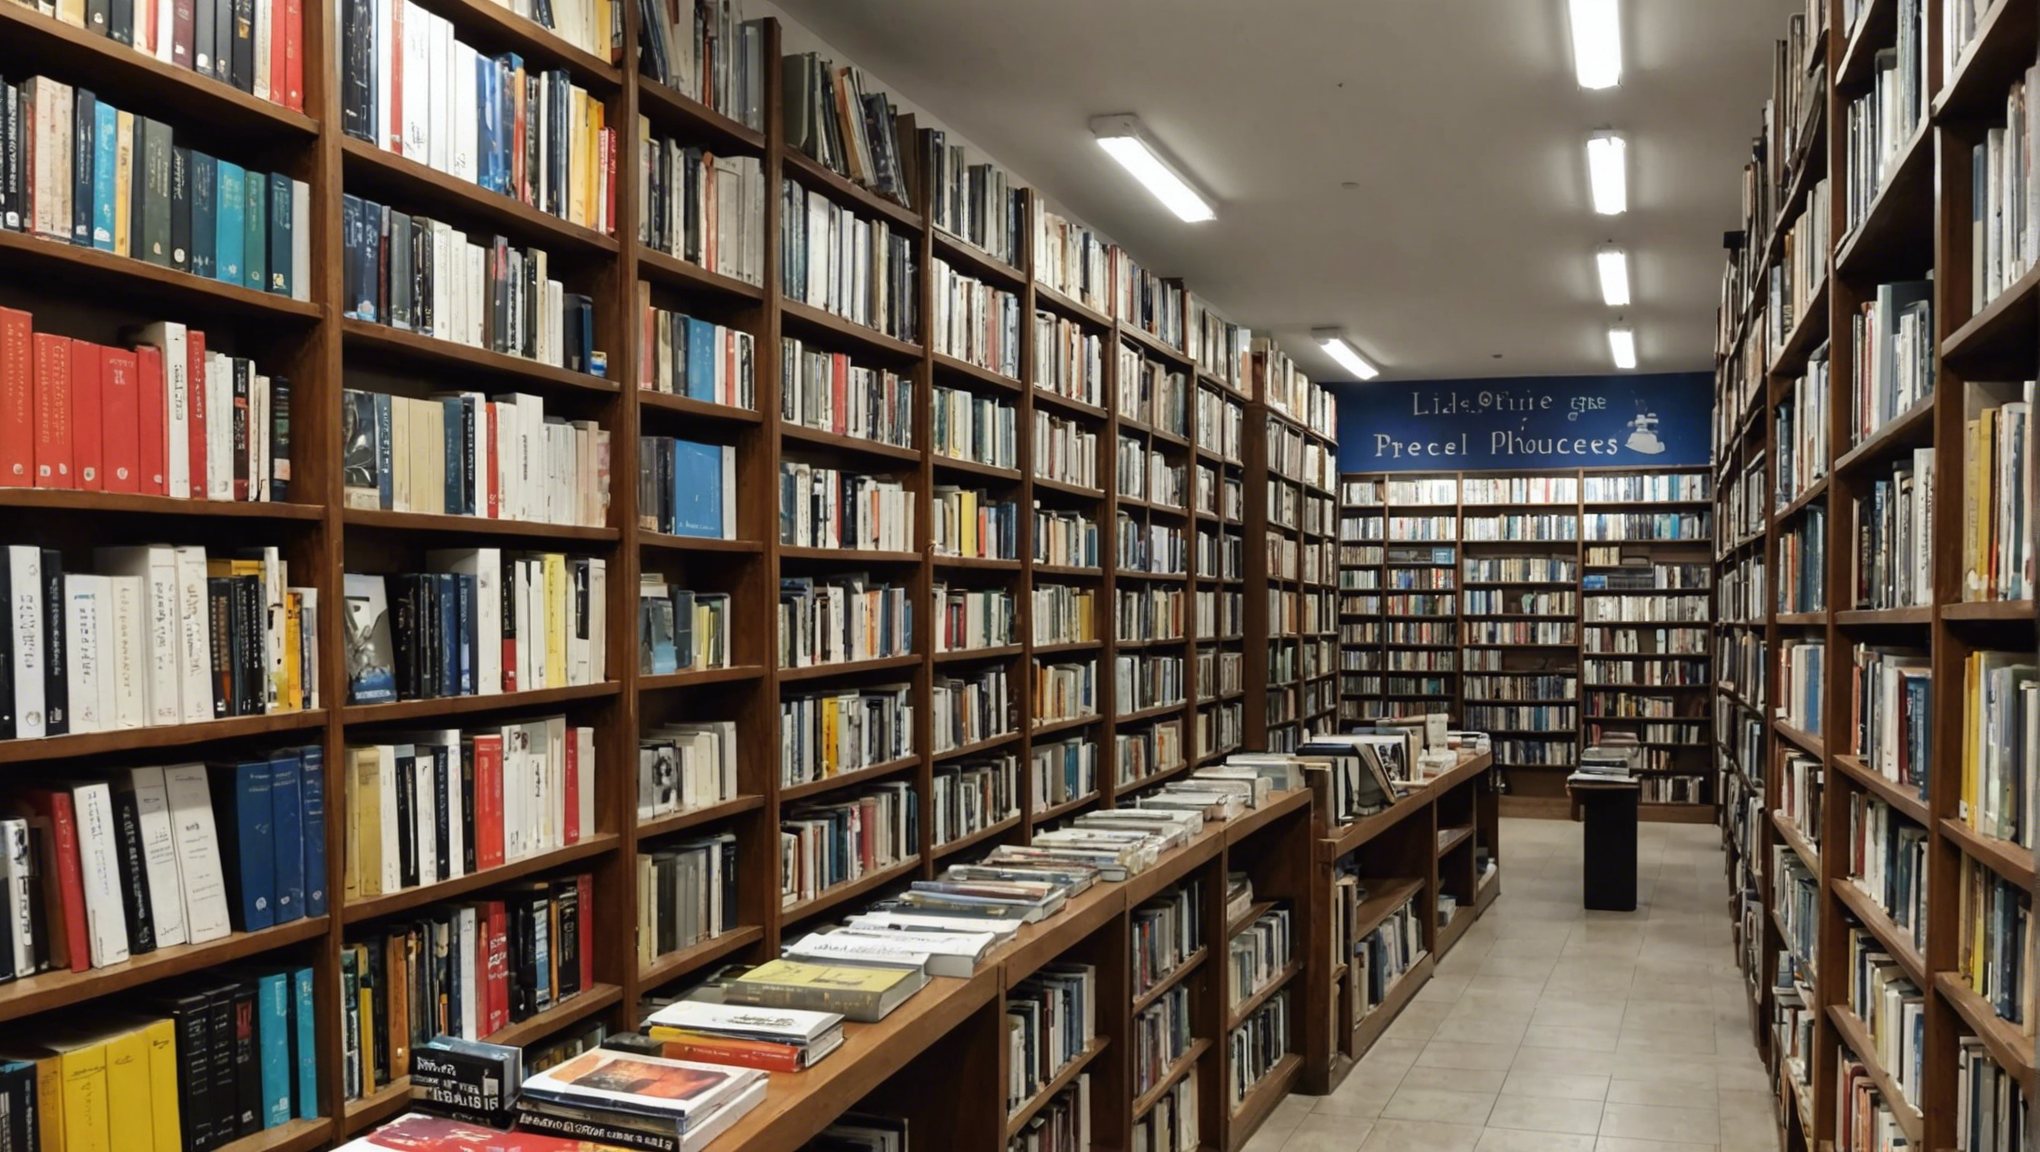 découvrez les trésors littéraires de la cité phocéenne avec notre guide des meilleures librairies à marseille. trouvez vos prochaines lectures parmi une sélection éclectique et passionnante.